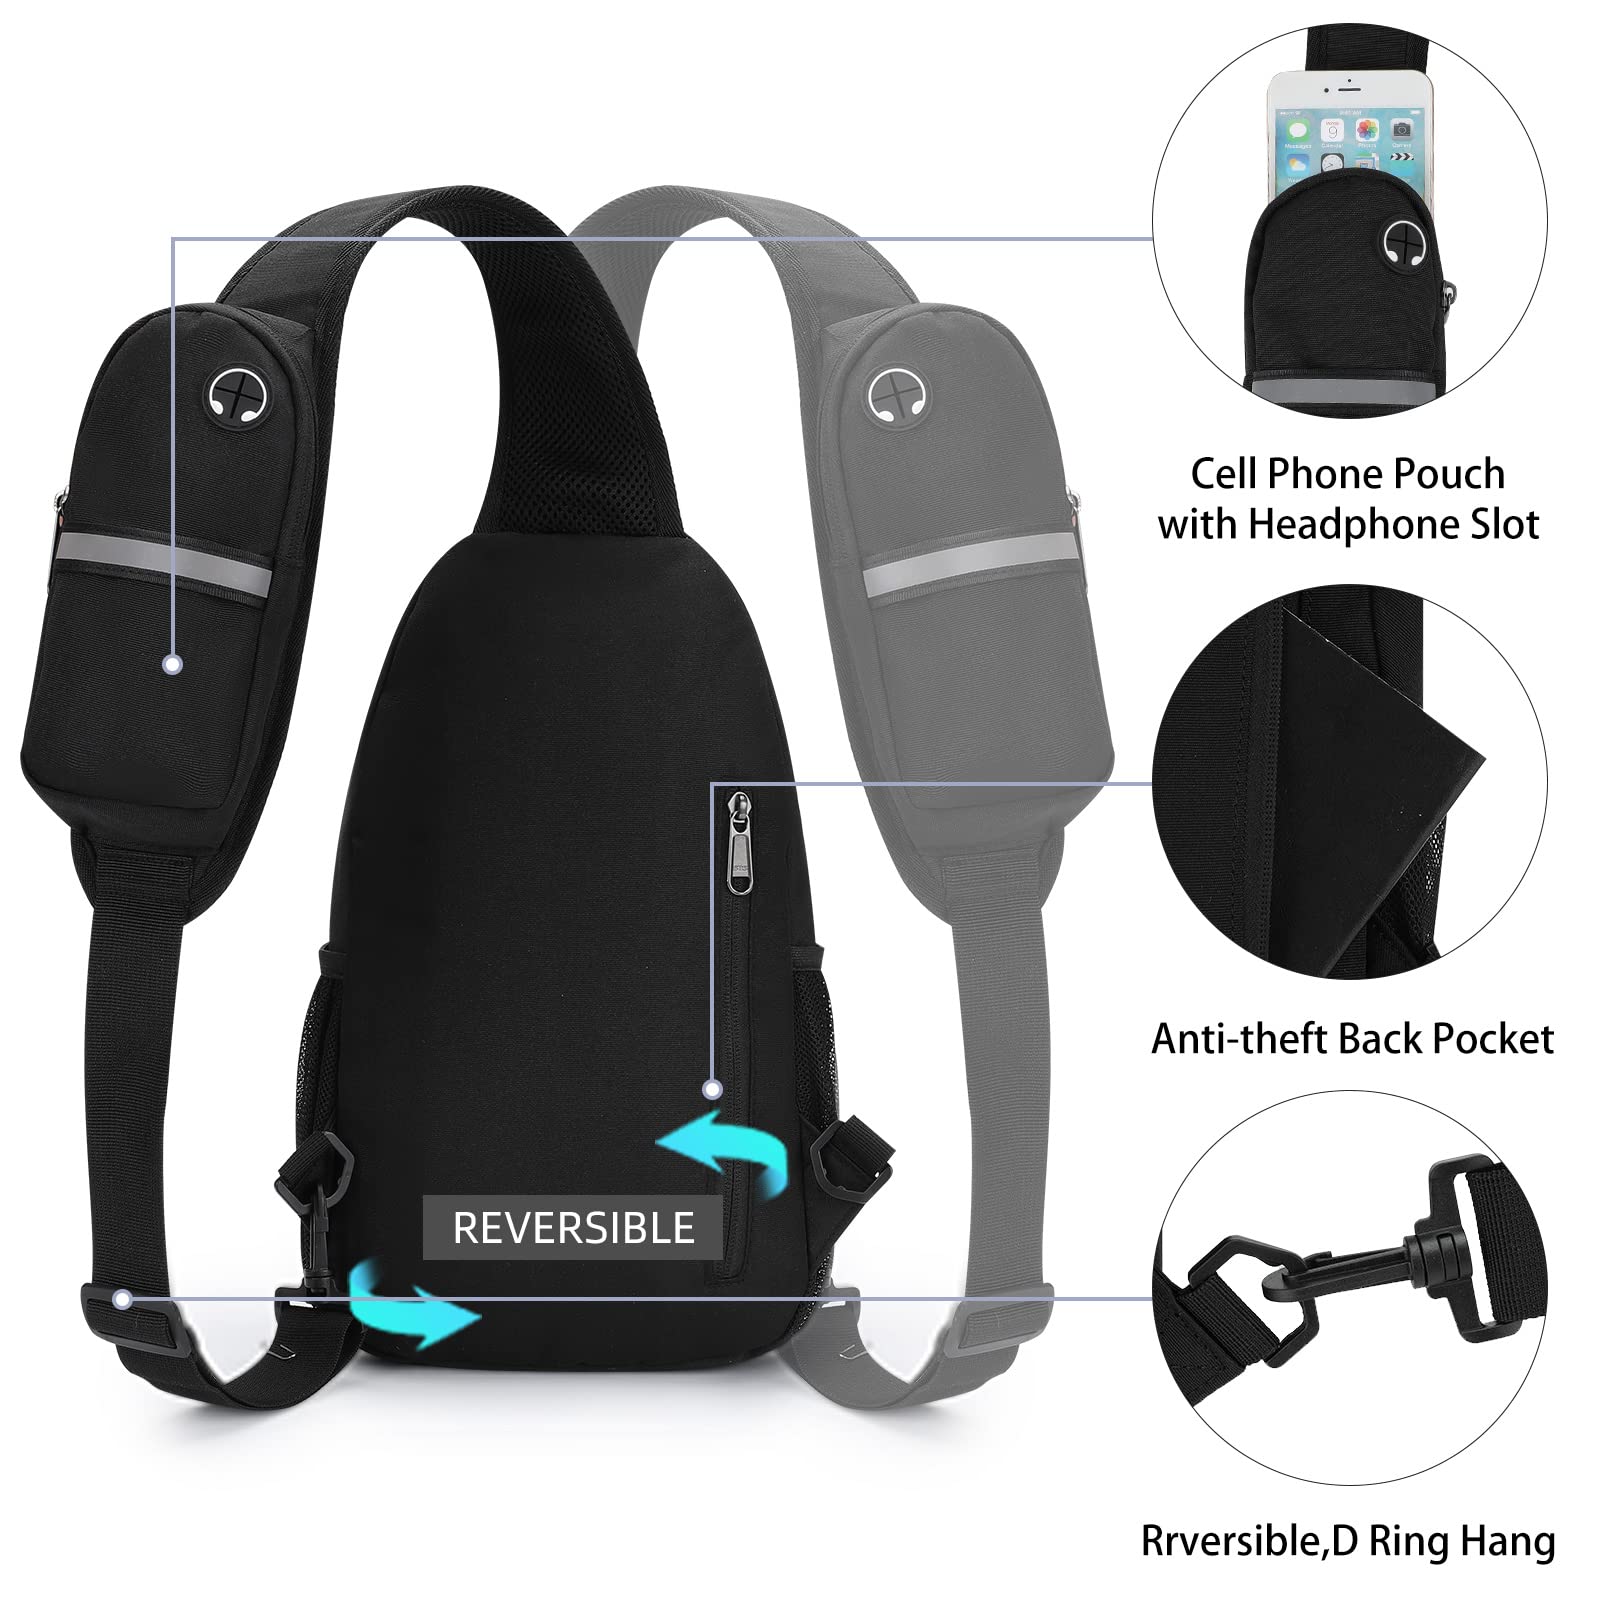 KUTQI Sling Backpack Crossbody Sling Bag for Women Men Multipurpose Travel Essentials Hiking Chest Bag Daypack